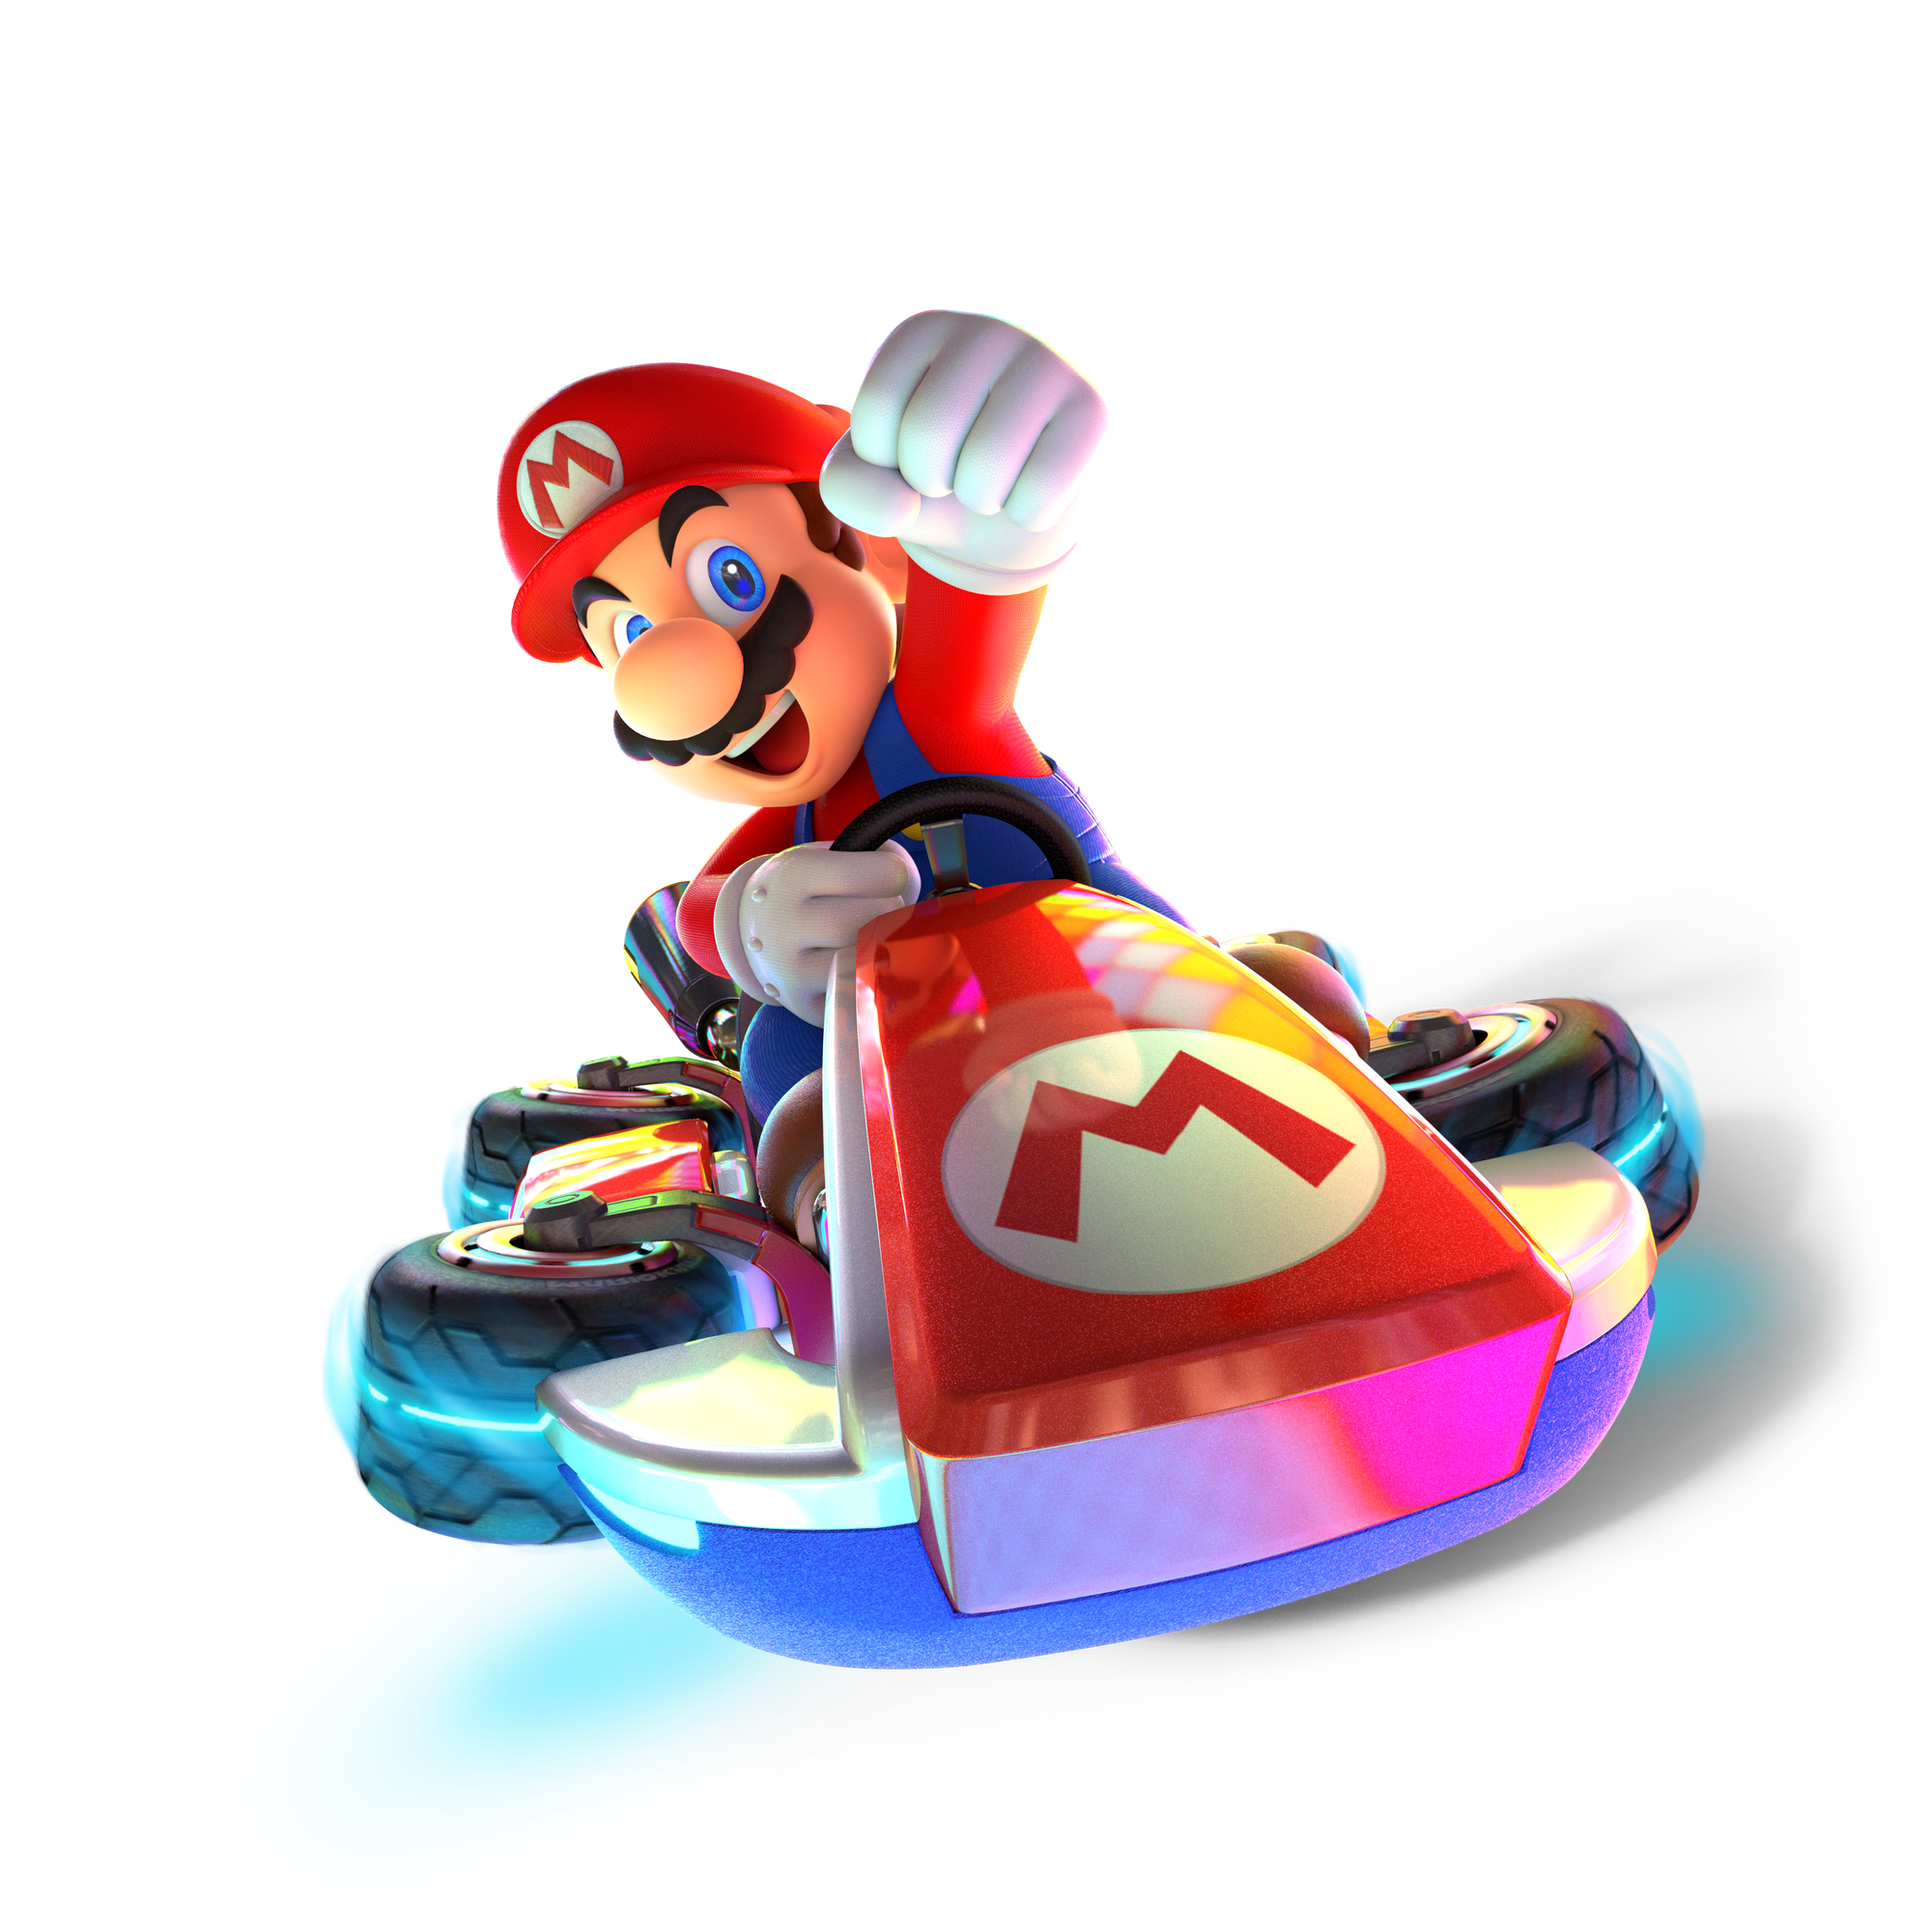 Image Mario Kart 8 Deluxe Character artwork 01.png Nintendo